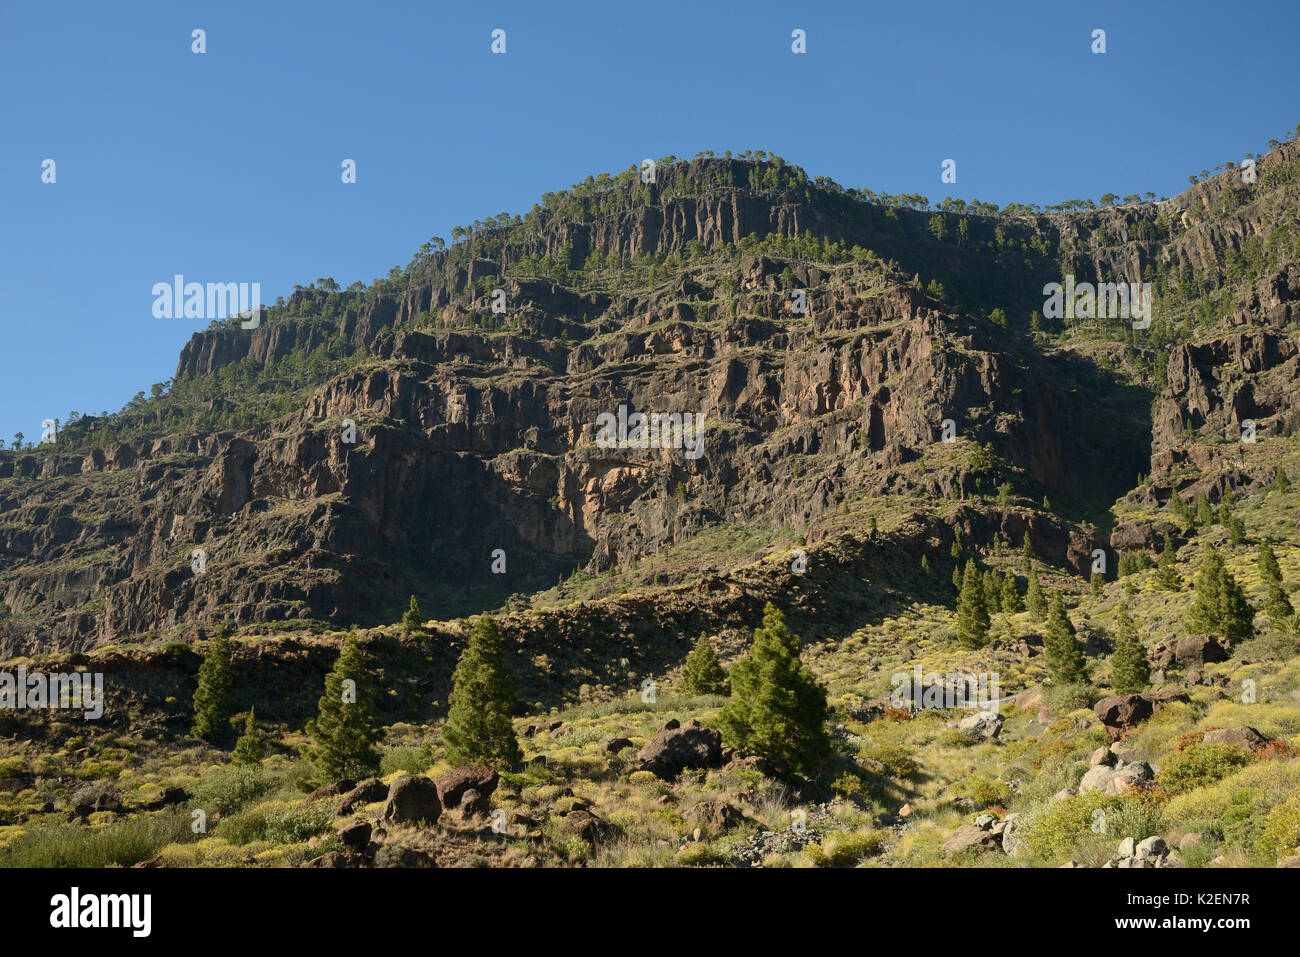 Montana Del Viso, einem vulkanischen Berg in Kanarischen Kiefern (Pinus canariensis) im Inagua Naturpark ein UNESCO-Biosphärenreservat in der Nähe von San Nicolas de Tolentino eingehüllt. Gran Canaria UNESCO-Biosphärenreservat, Gran Canaria. Kanarischen Inseln. Juni 2016. Stockfoto